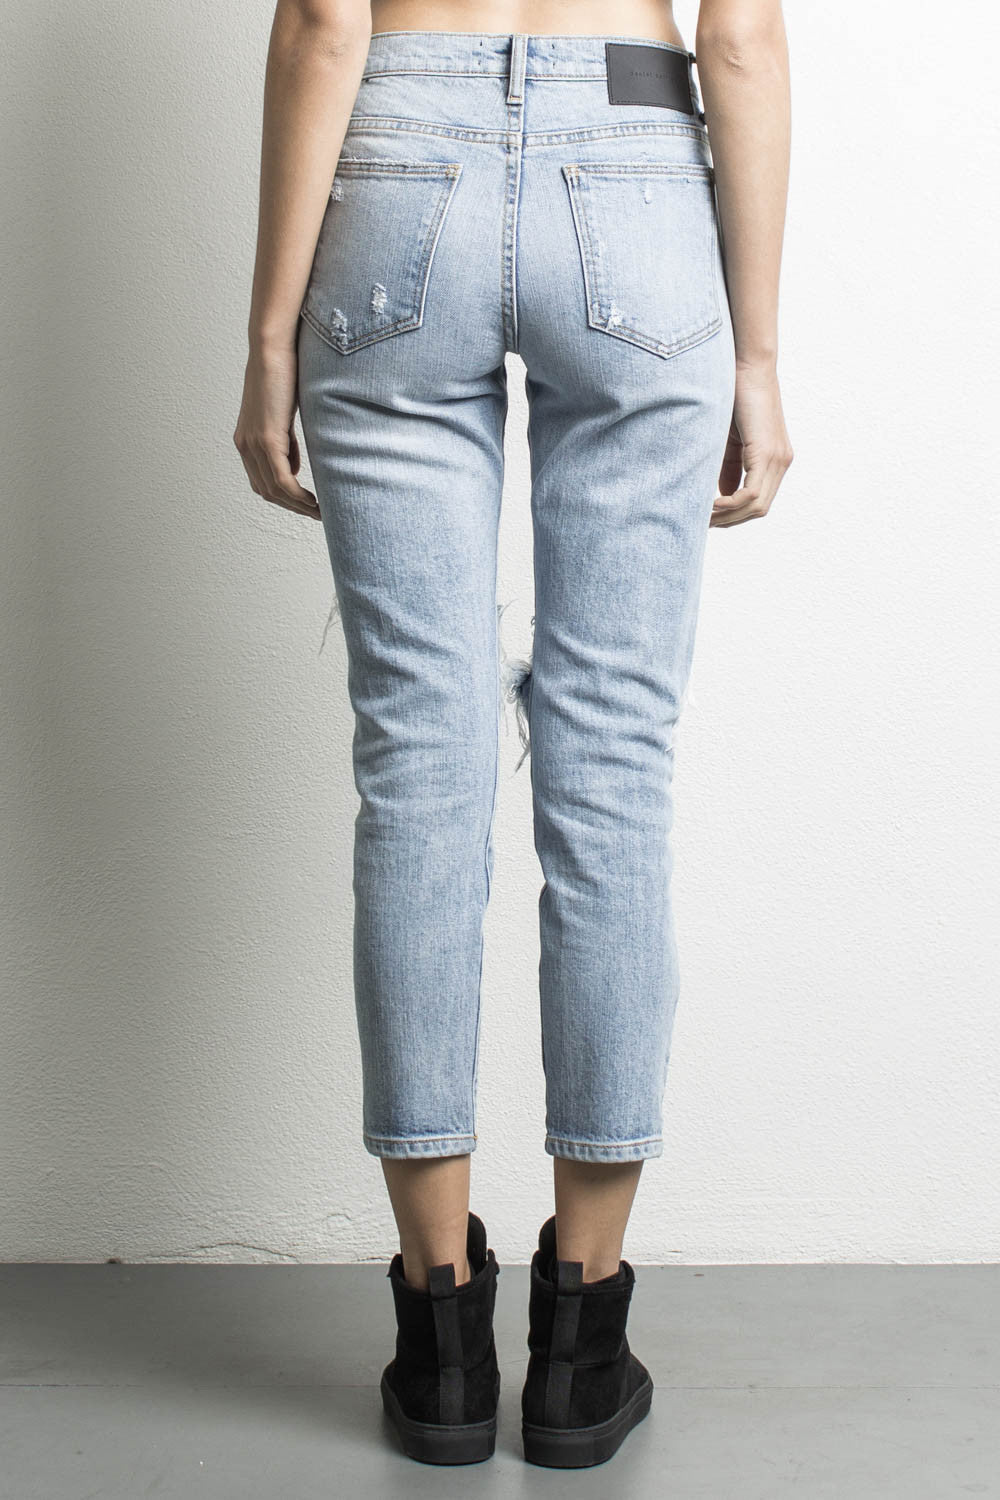 high waisted denim jeans